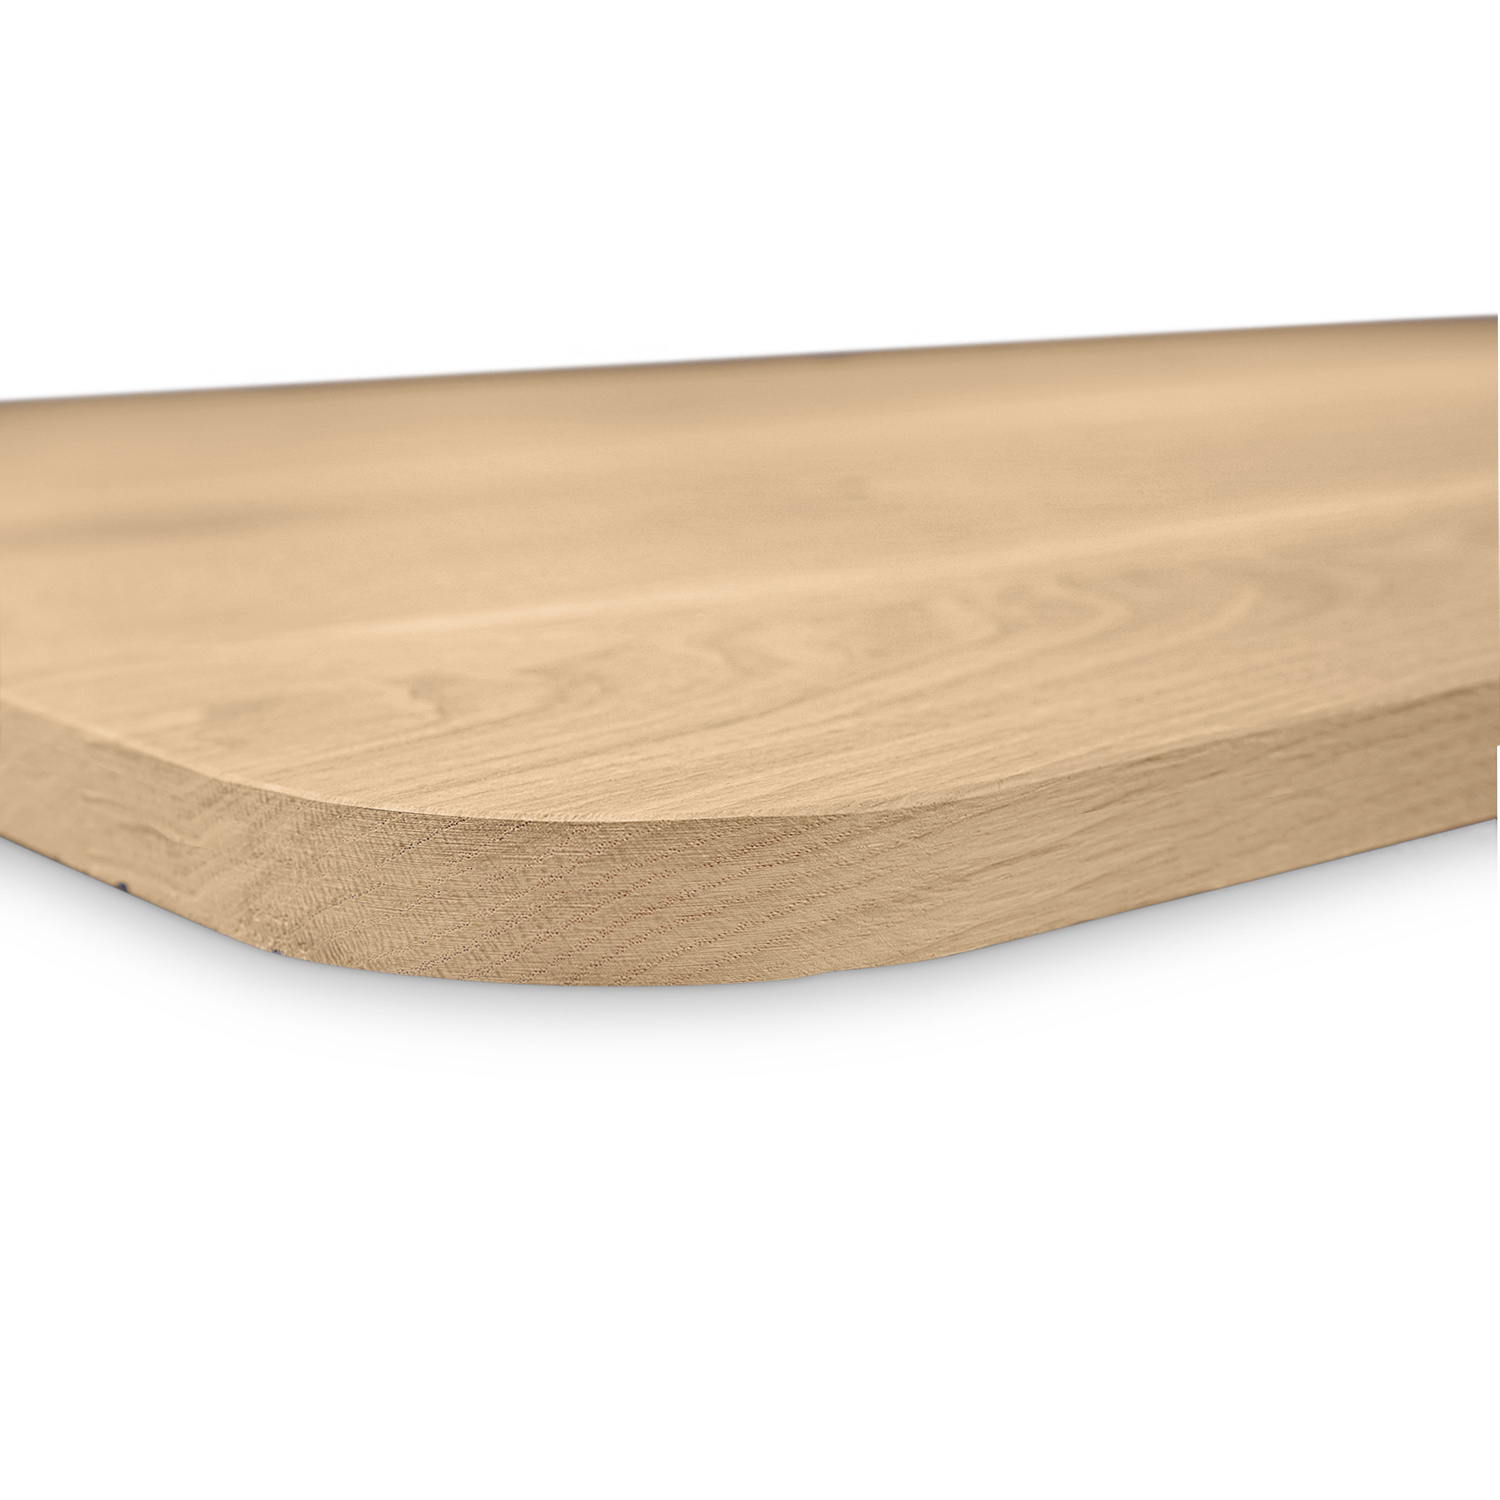  Eiken tafelblad met ronde hoeken - 4 cm dik (1-laag) - Diverse afmetingen - rustiek Europees eikenhout - met brede lamellen (circa 10-12 cm) - verlijmd kd 8-12%